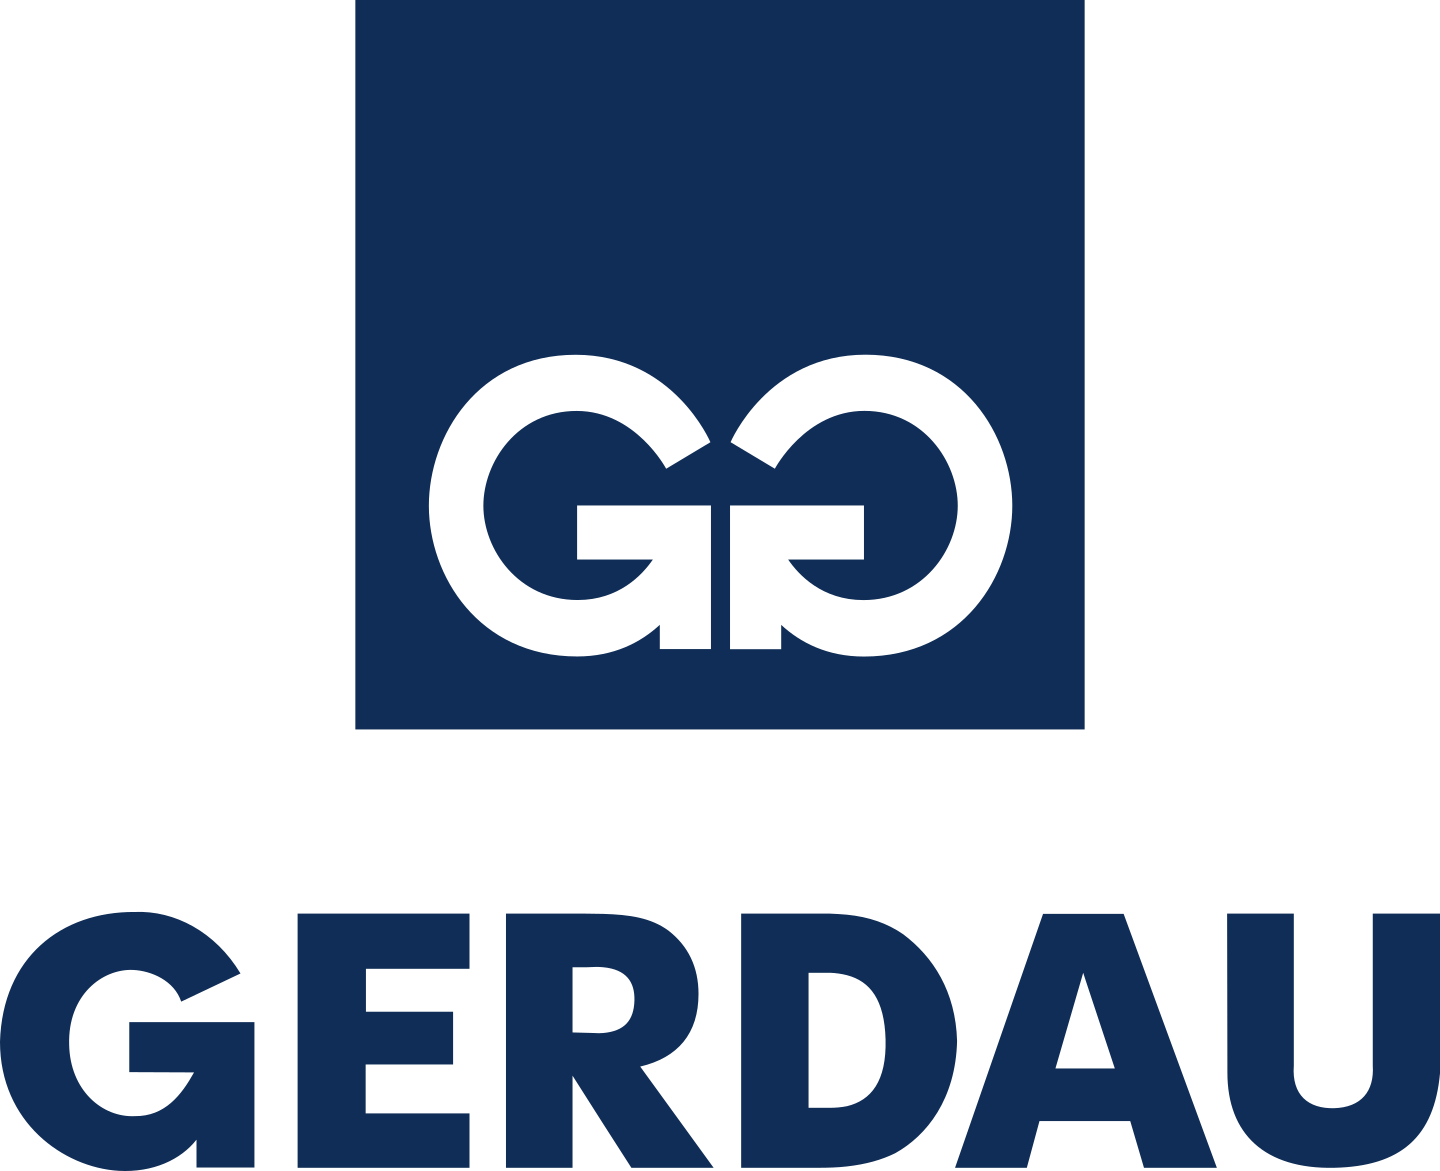 gerdau-logo-3